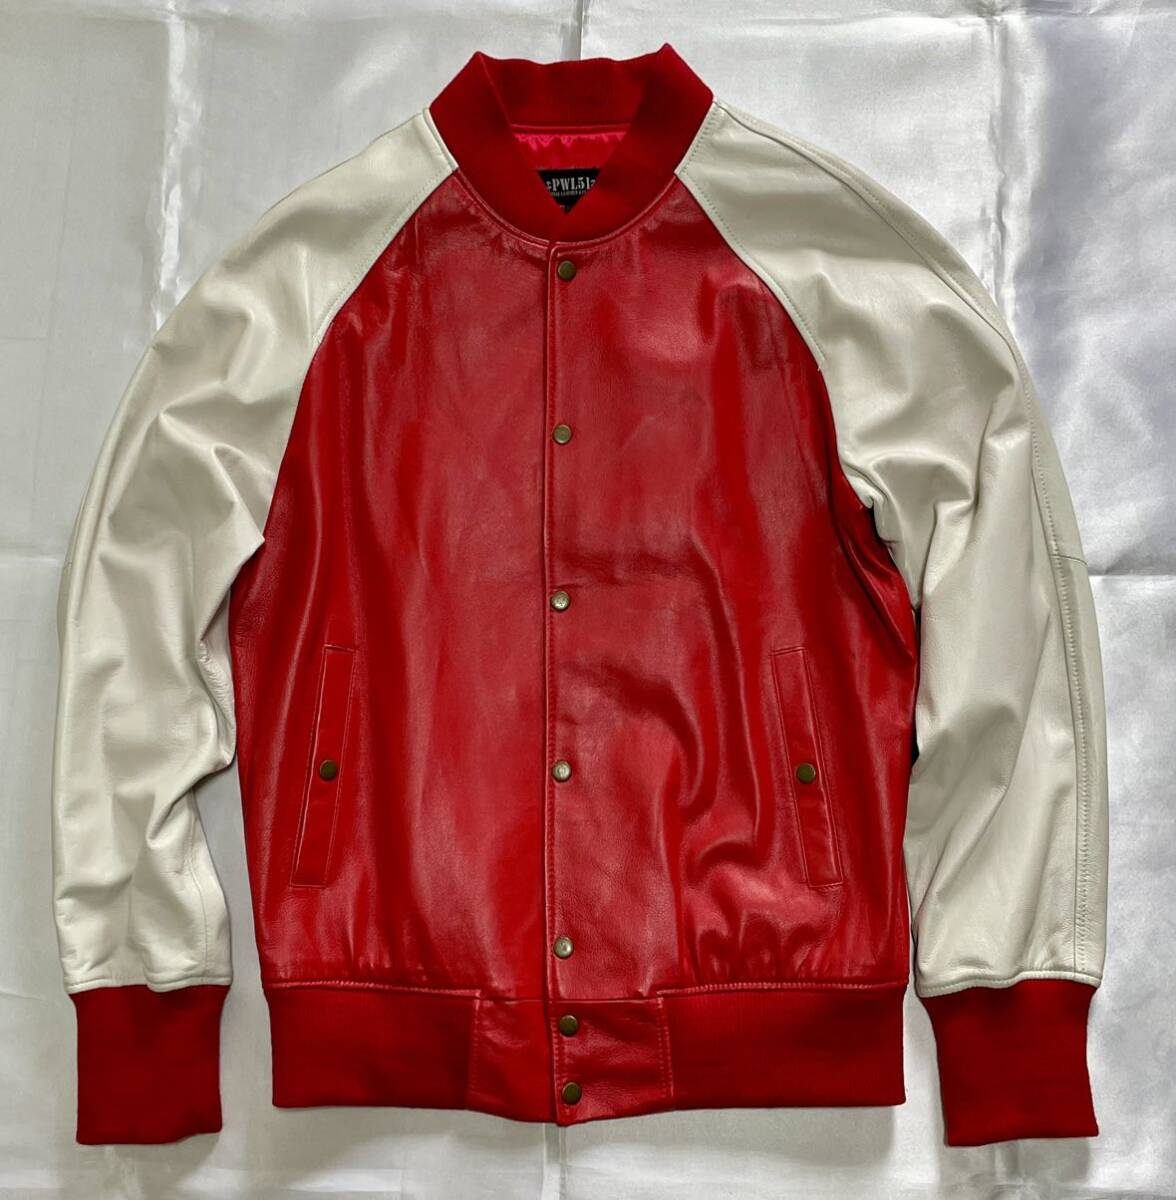 【PWL51】本革スタジャン・イタリアレザー・柔らかくしなやかなイタリア製羊皮・韓国縫製・メンズMサイズ・赤白の画像1